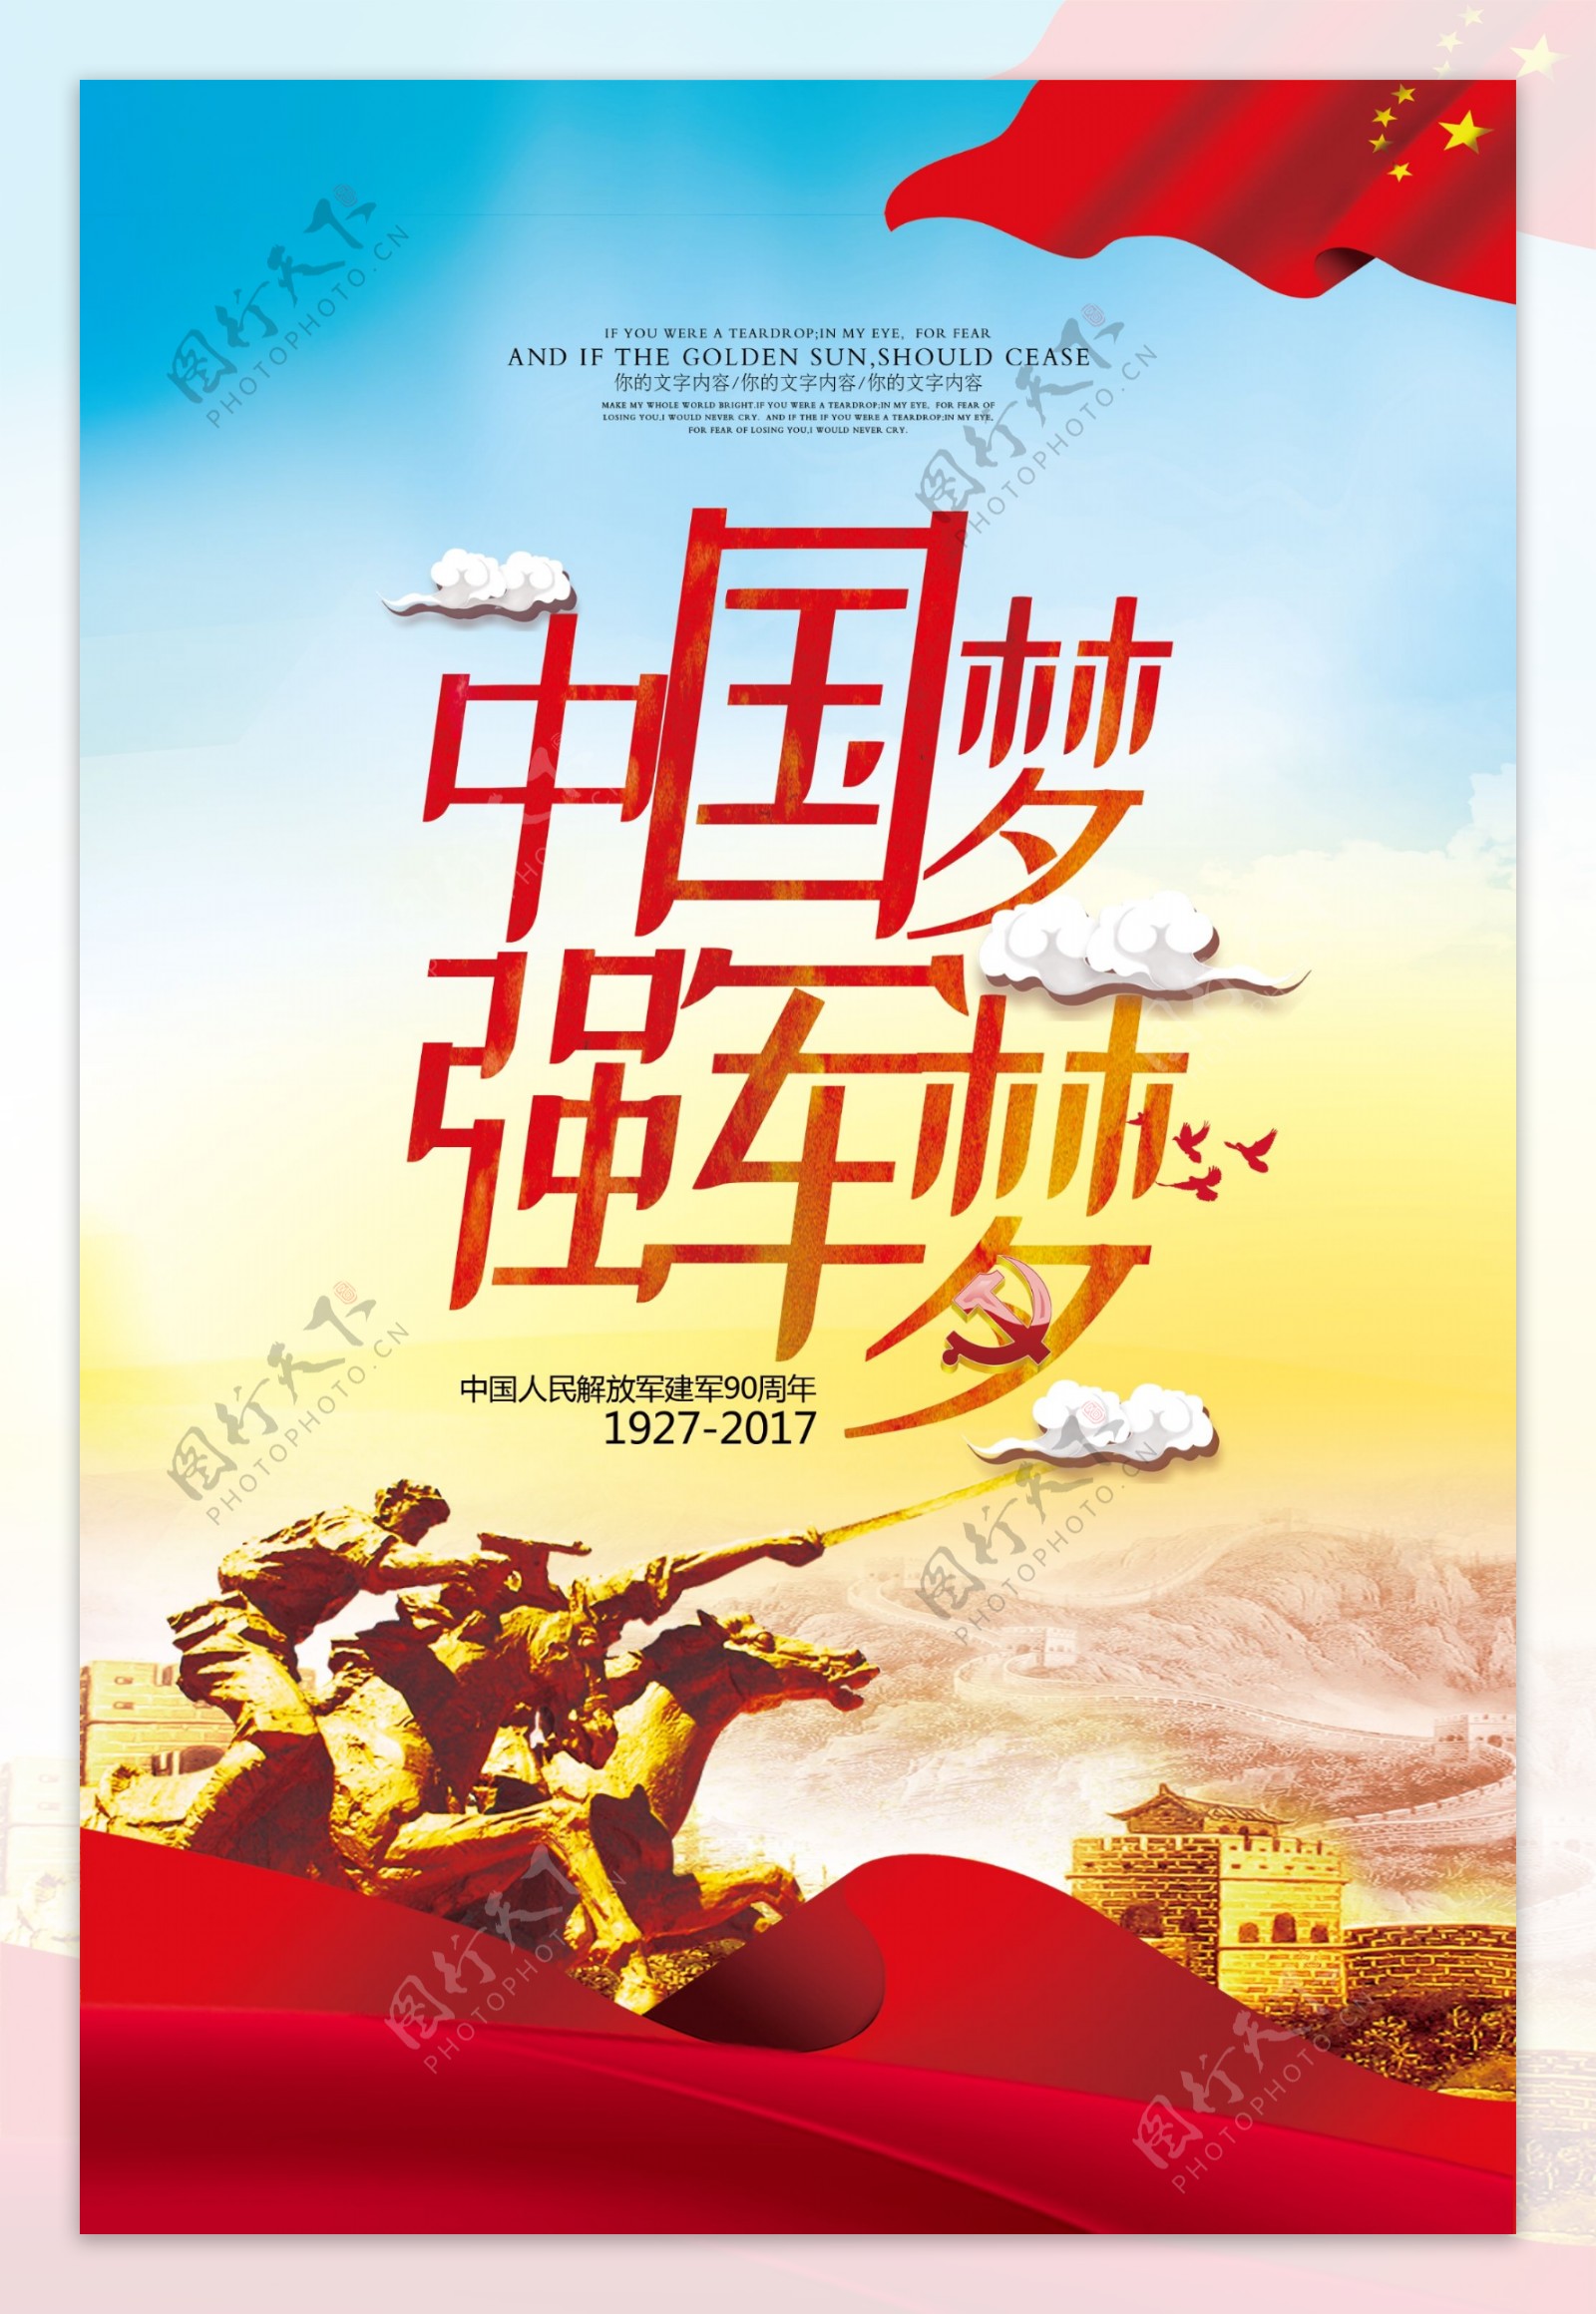 时尚大气中国梦宣传海报设计